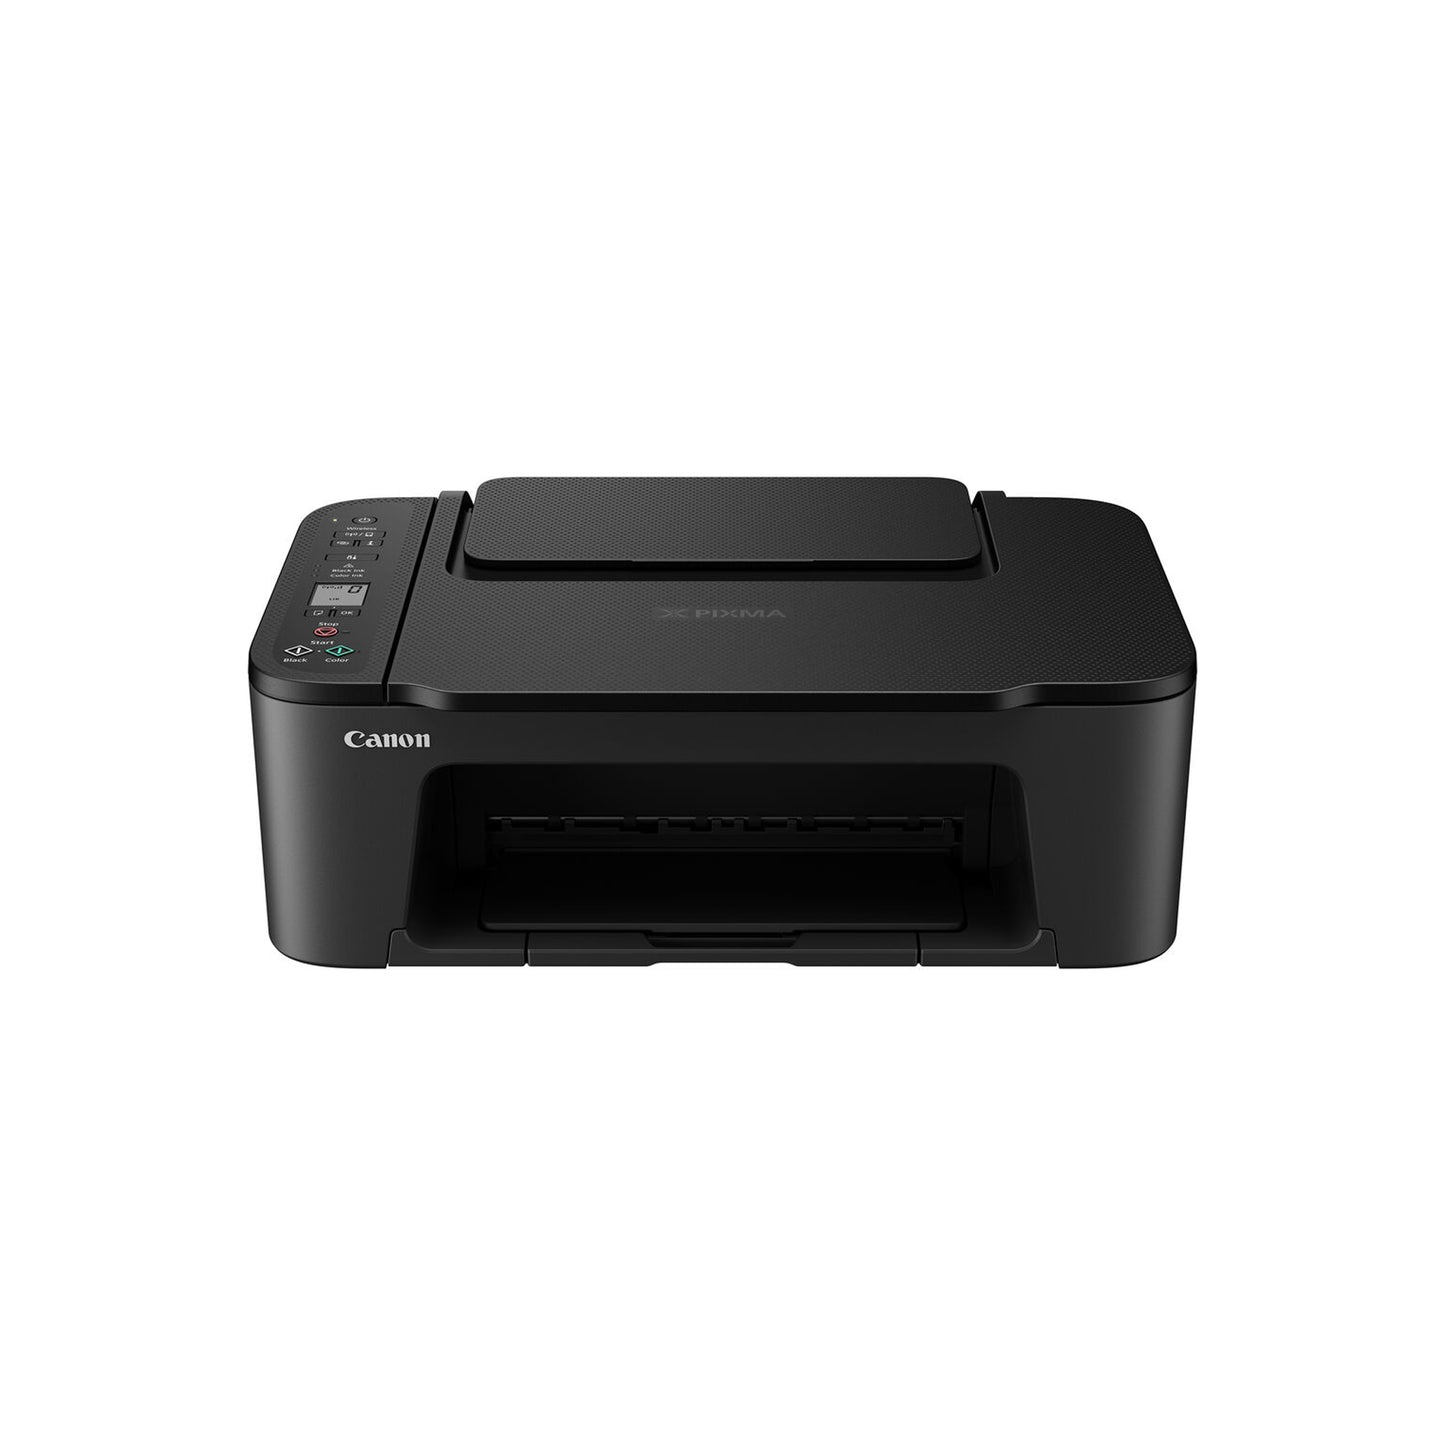 Canon PIXMA TS3520 Compact Wireless All-in-One Printer, Black